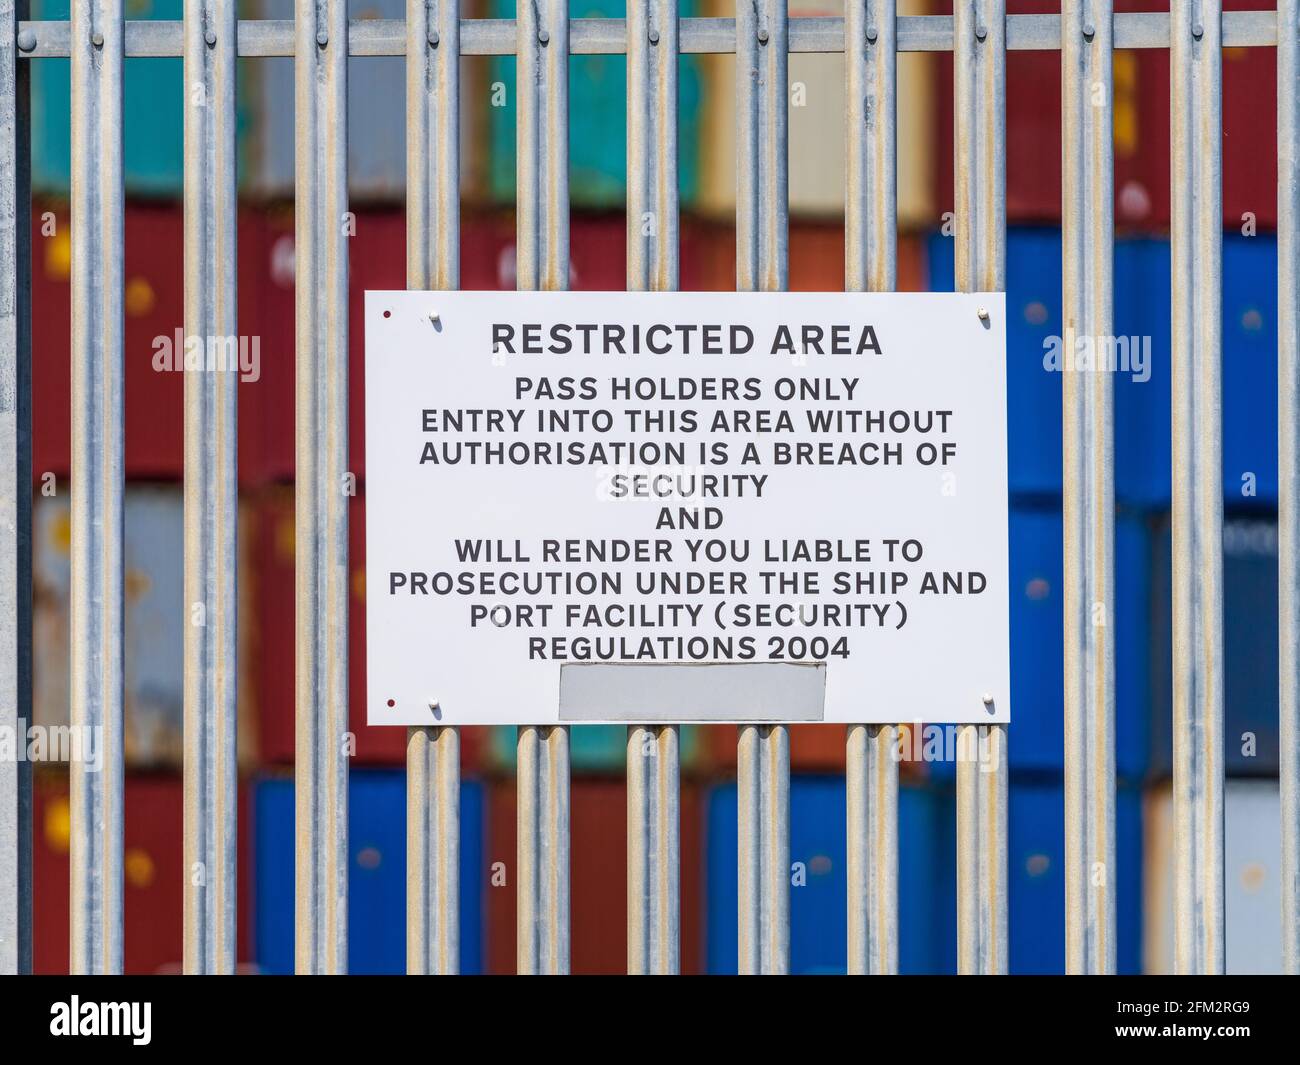 Sécurité du port au Royaume-Uni - restrictions d'accès. Panneaux de zone de sécurité restreinte autour du port d'expédition des conteneurs de Felixstowe. Banque D'Images